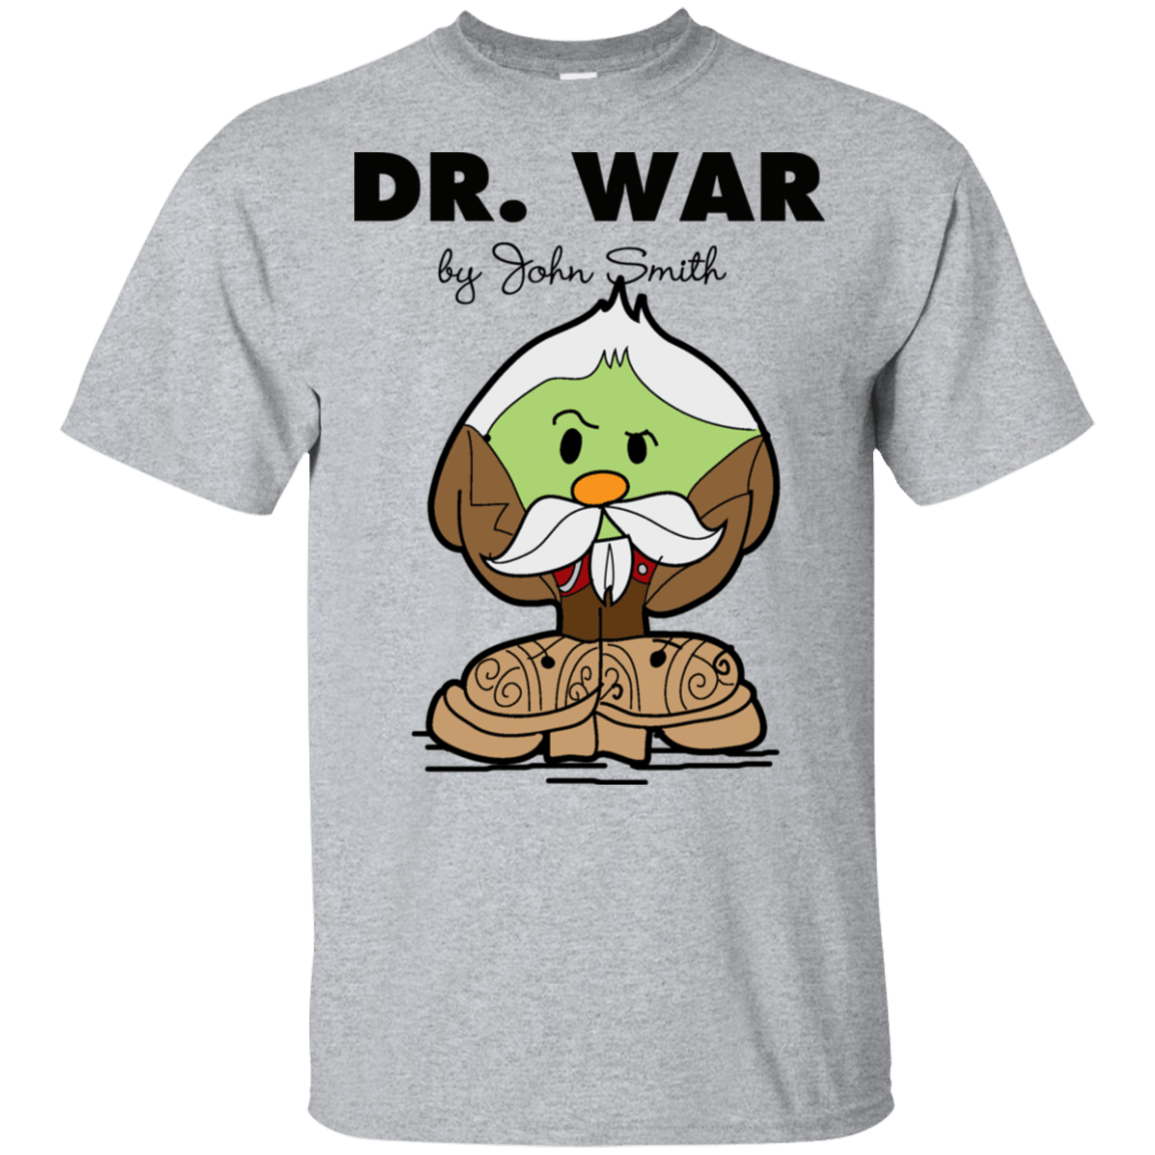 T-Shirts Sport Grey / S Dr War T-Shirt